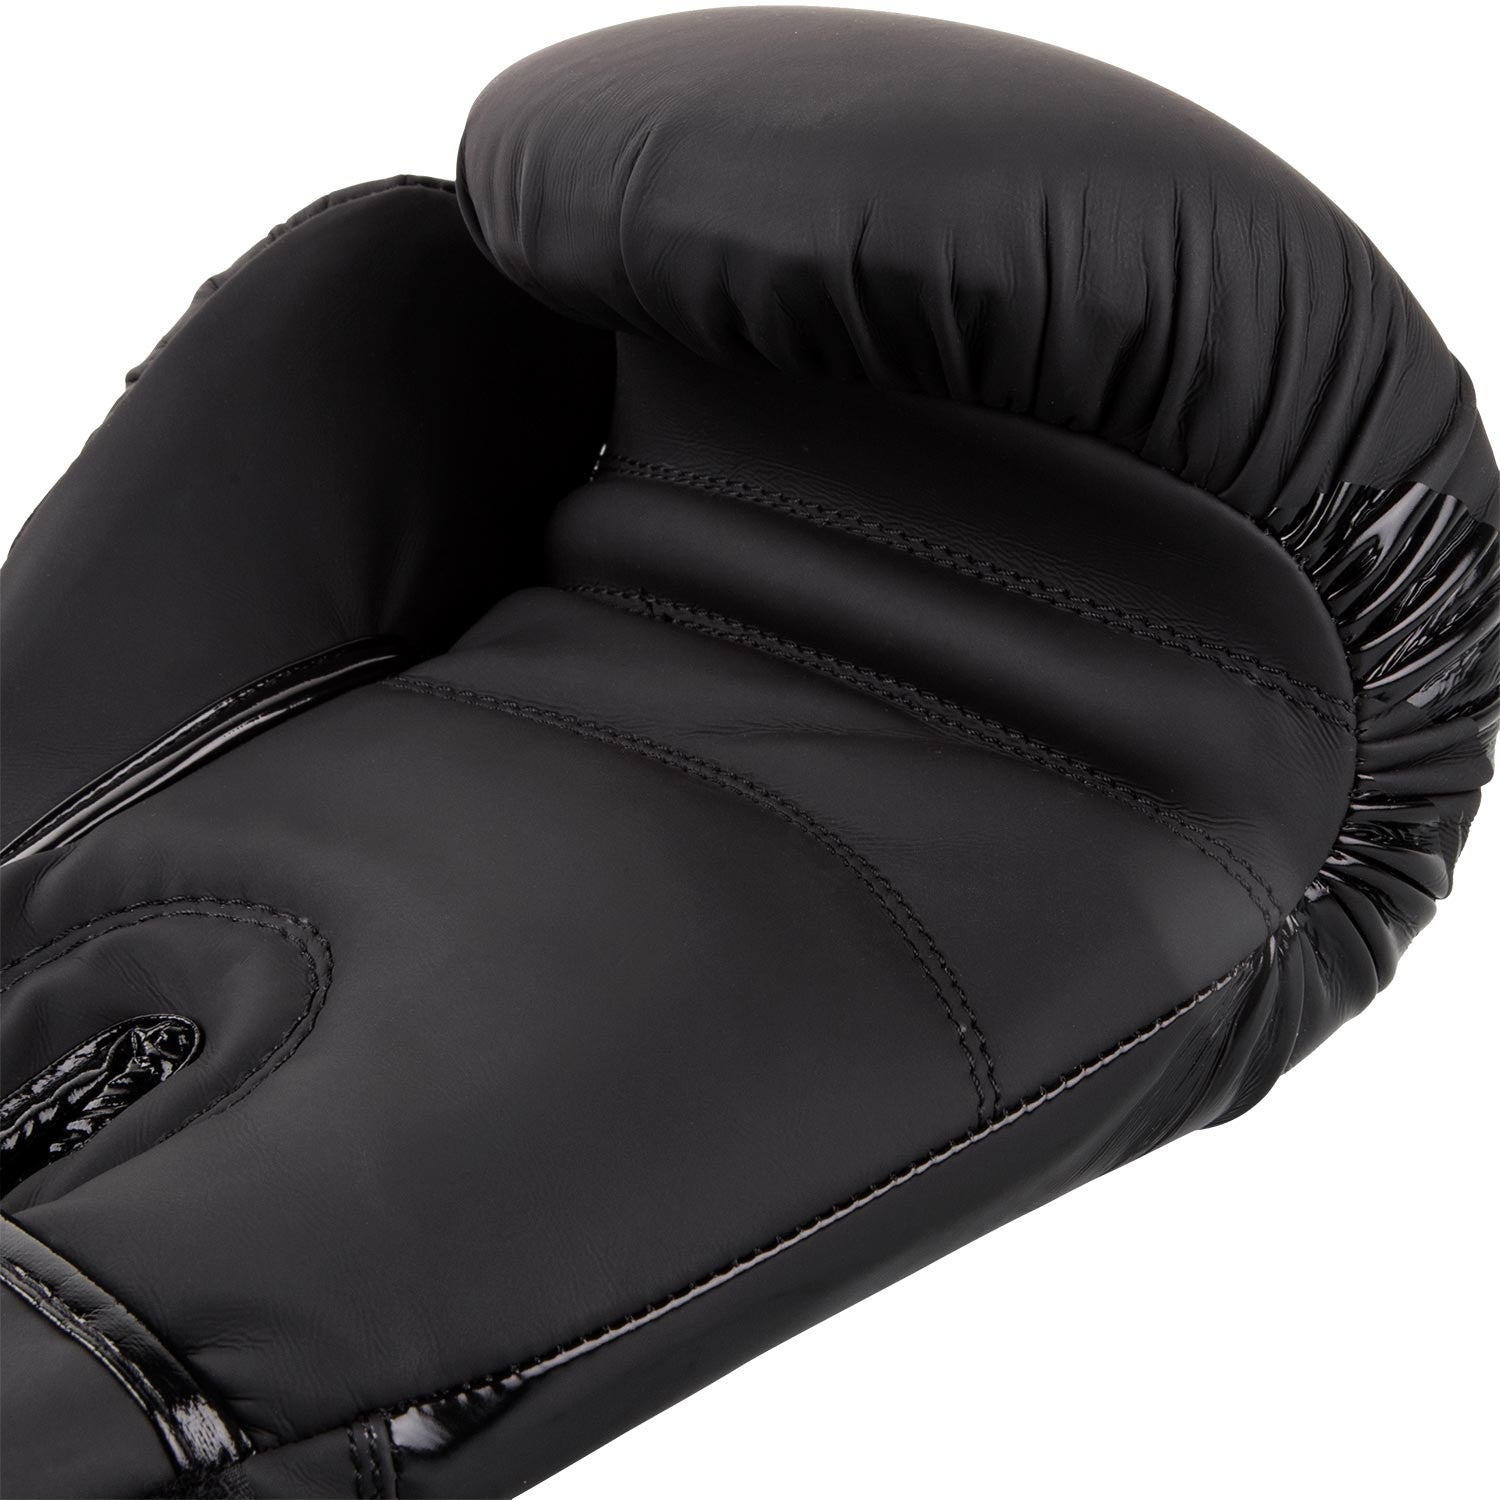 Venum Contender 2.0 Boxing Gloves - Black/Black - Venum